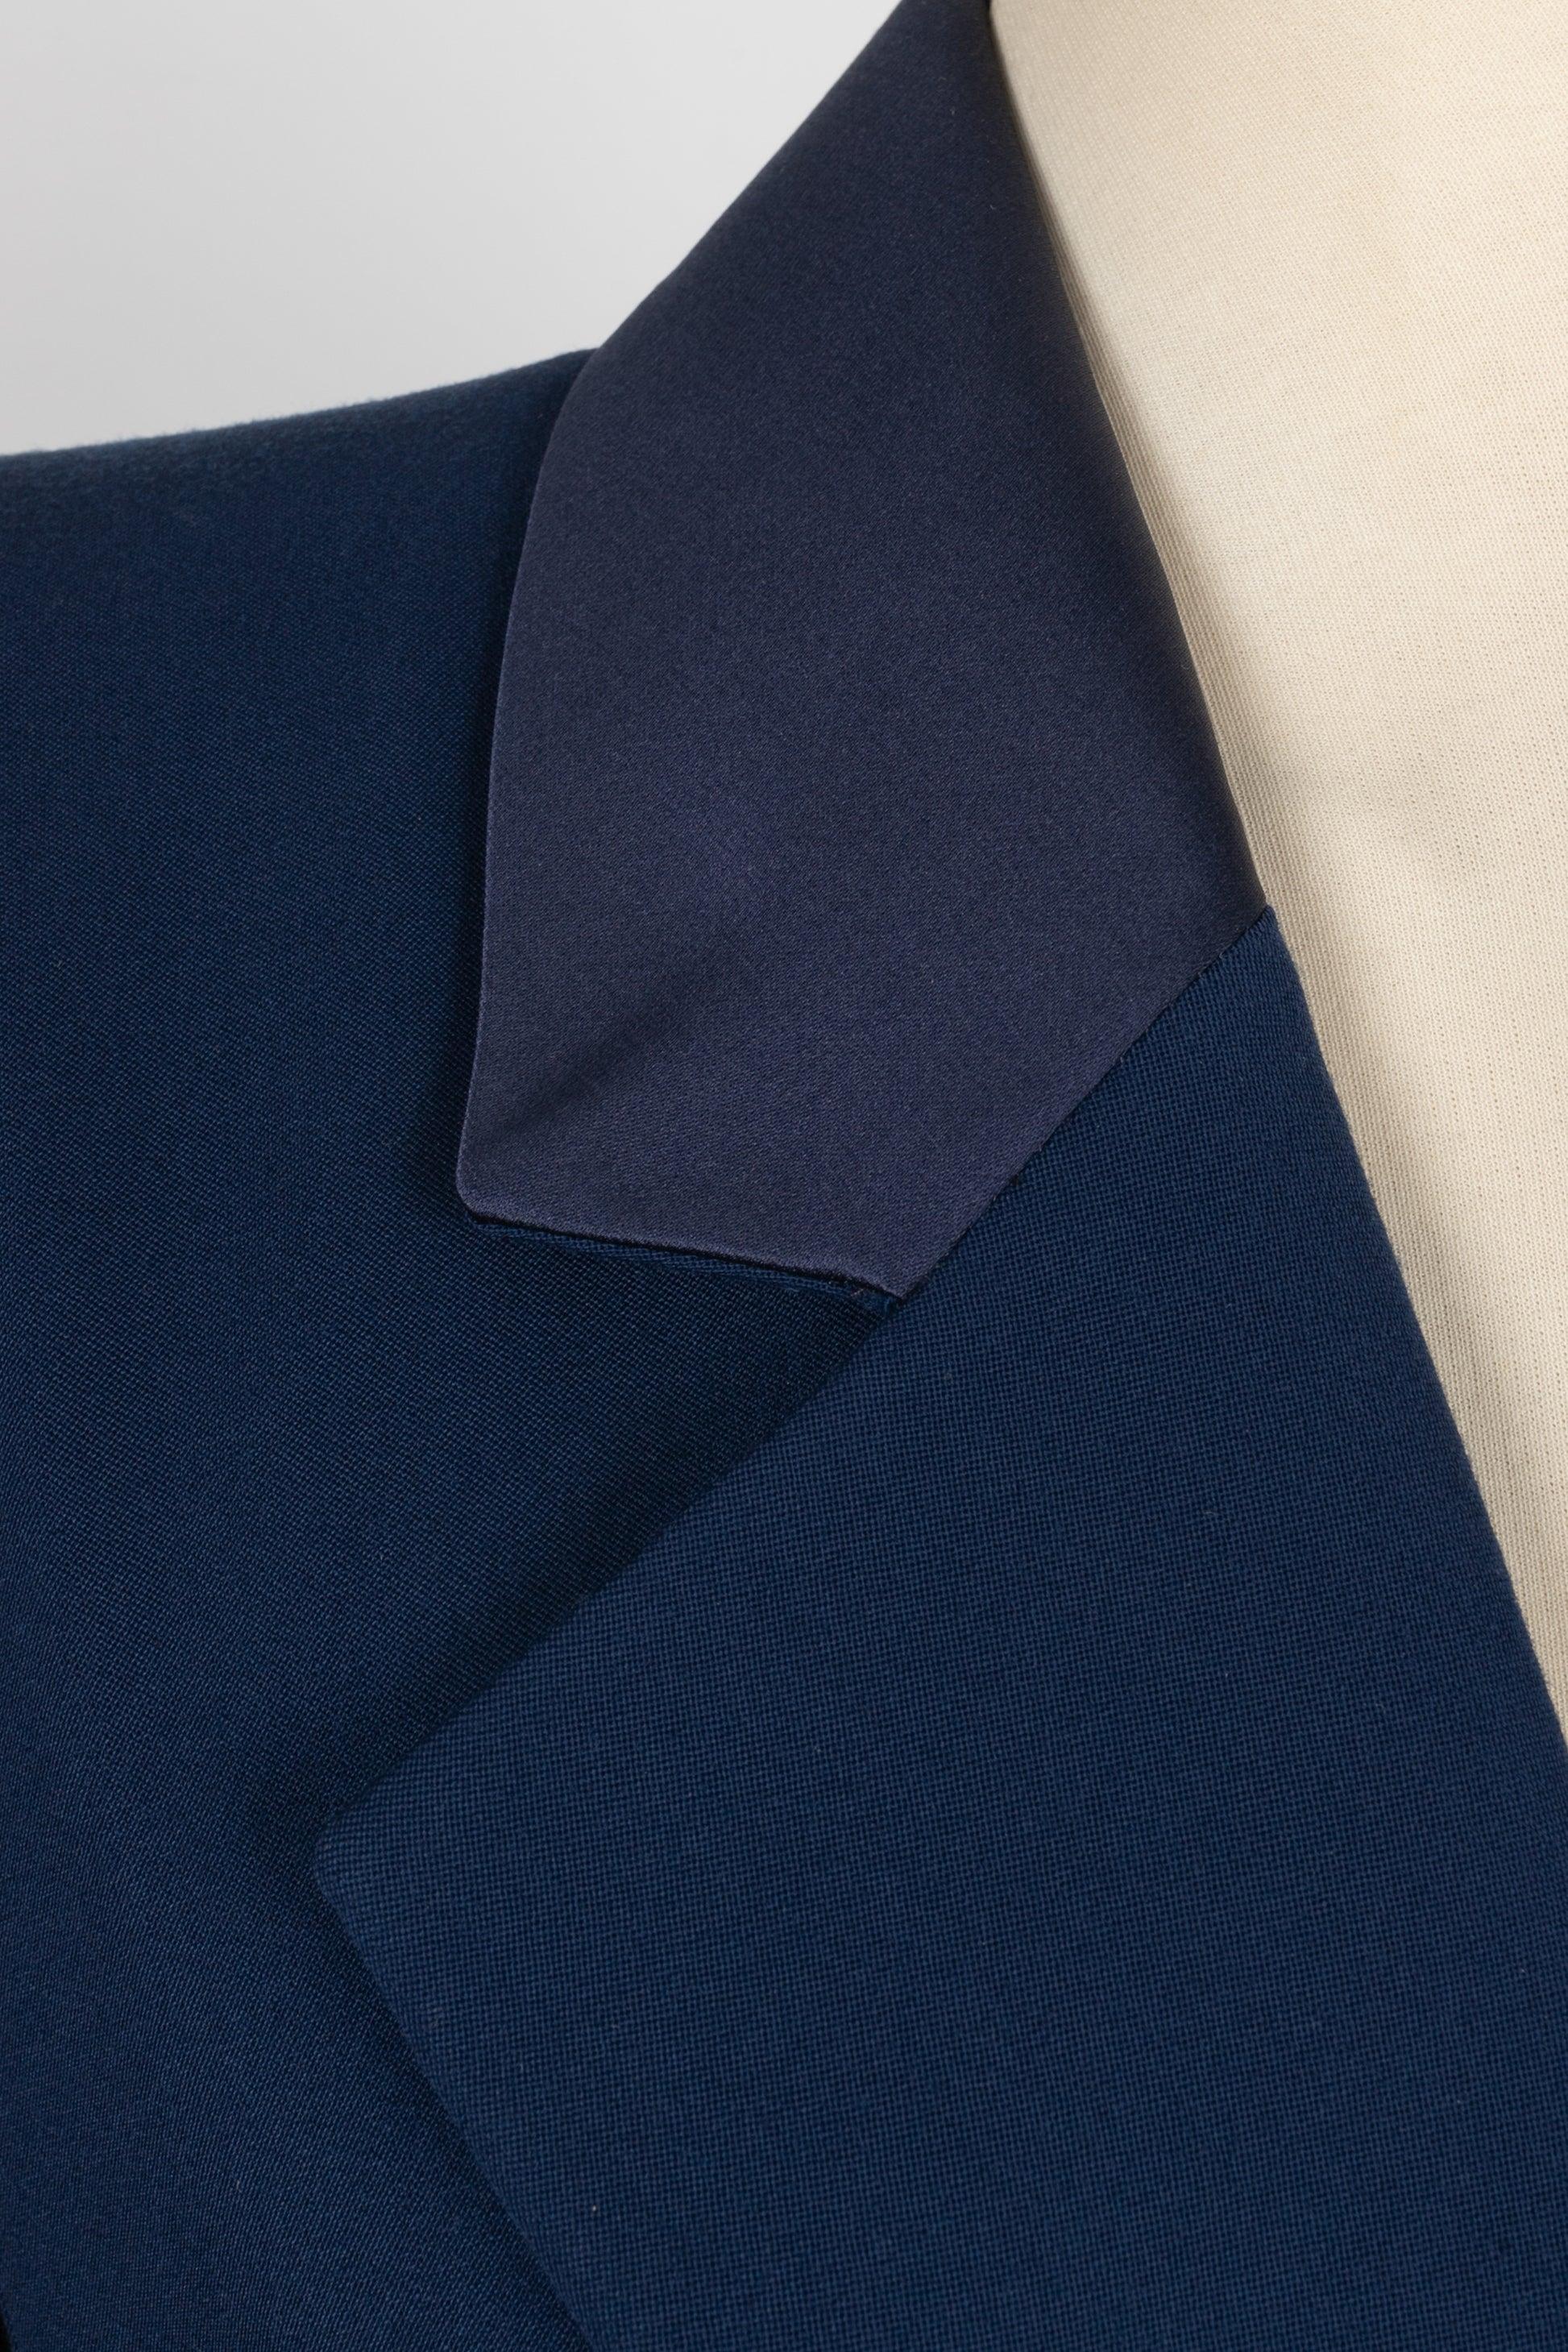 Yves Saint Laurent Blue Wool Pant Suit Haute Couture 36FR/38FR 3